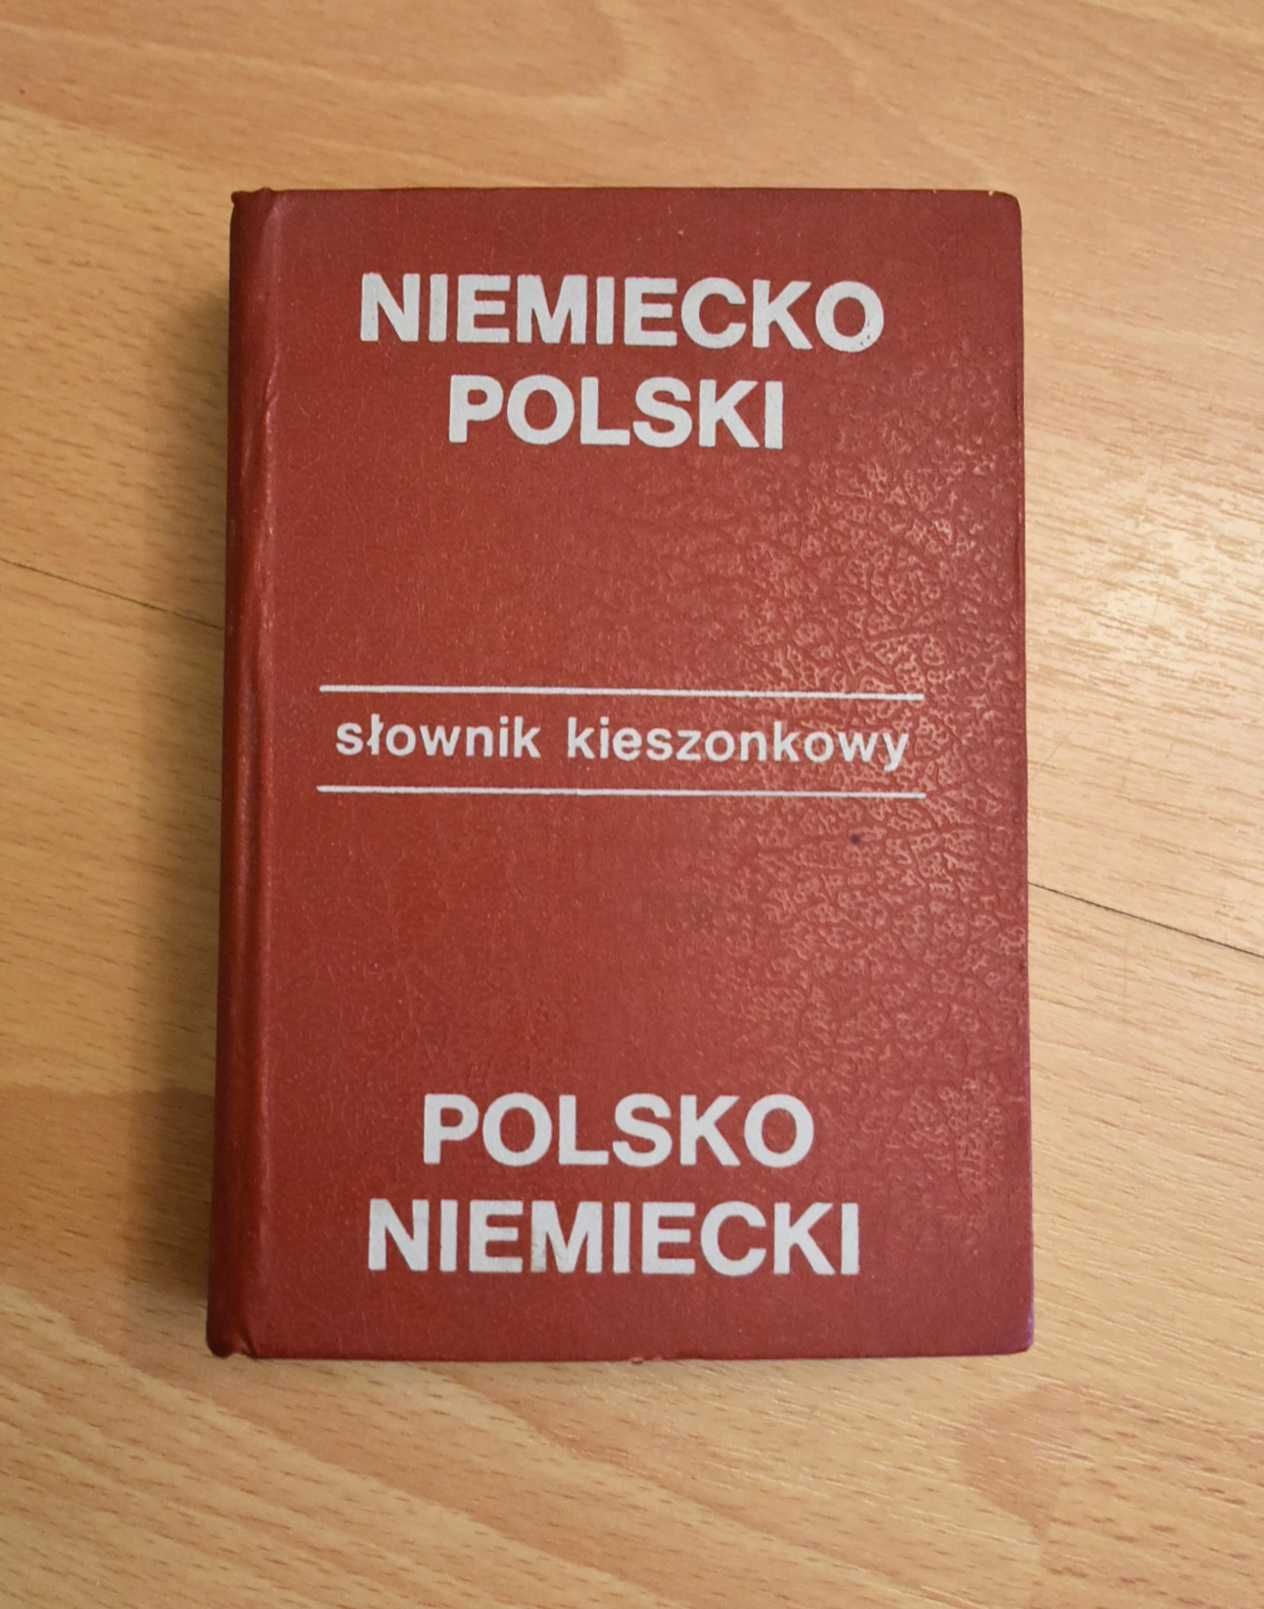 Słownik niemiecko-polski, polsko-niemiecki, 615 stron